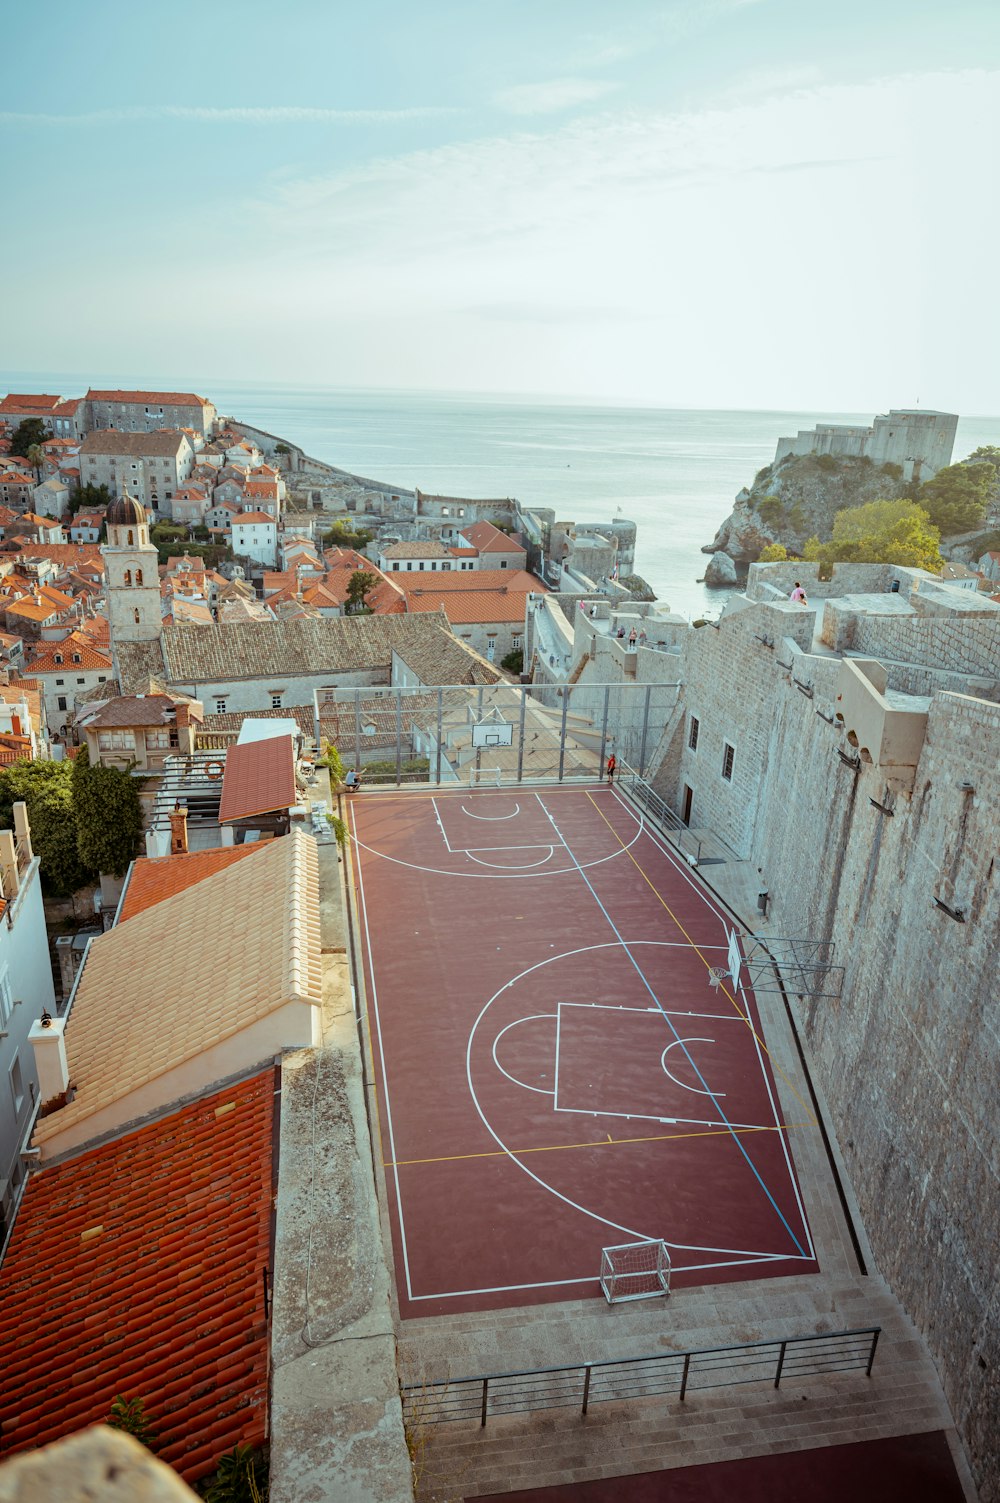 Vue aérienne d’un terrain de basket dans une ville